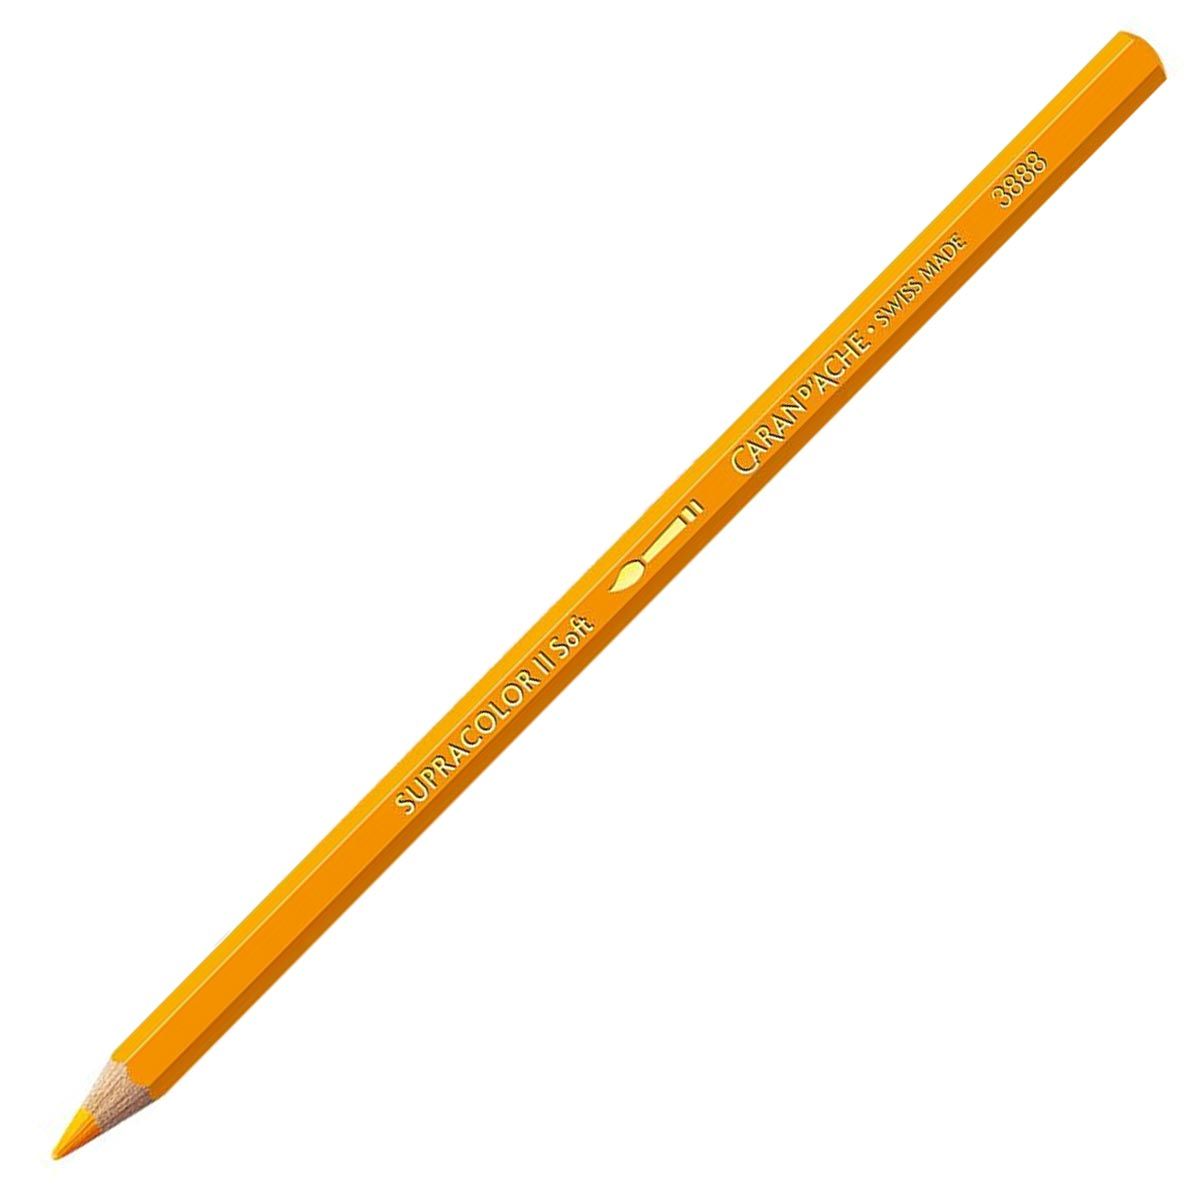 Caran d'Ache Supracolor ll Soft Aquarelle Pencil - Golden Yellow 020